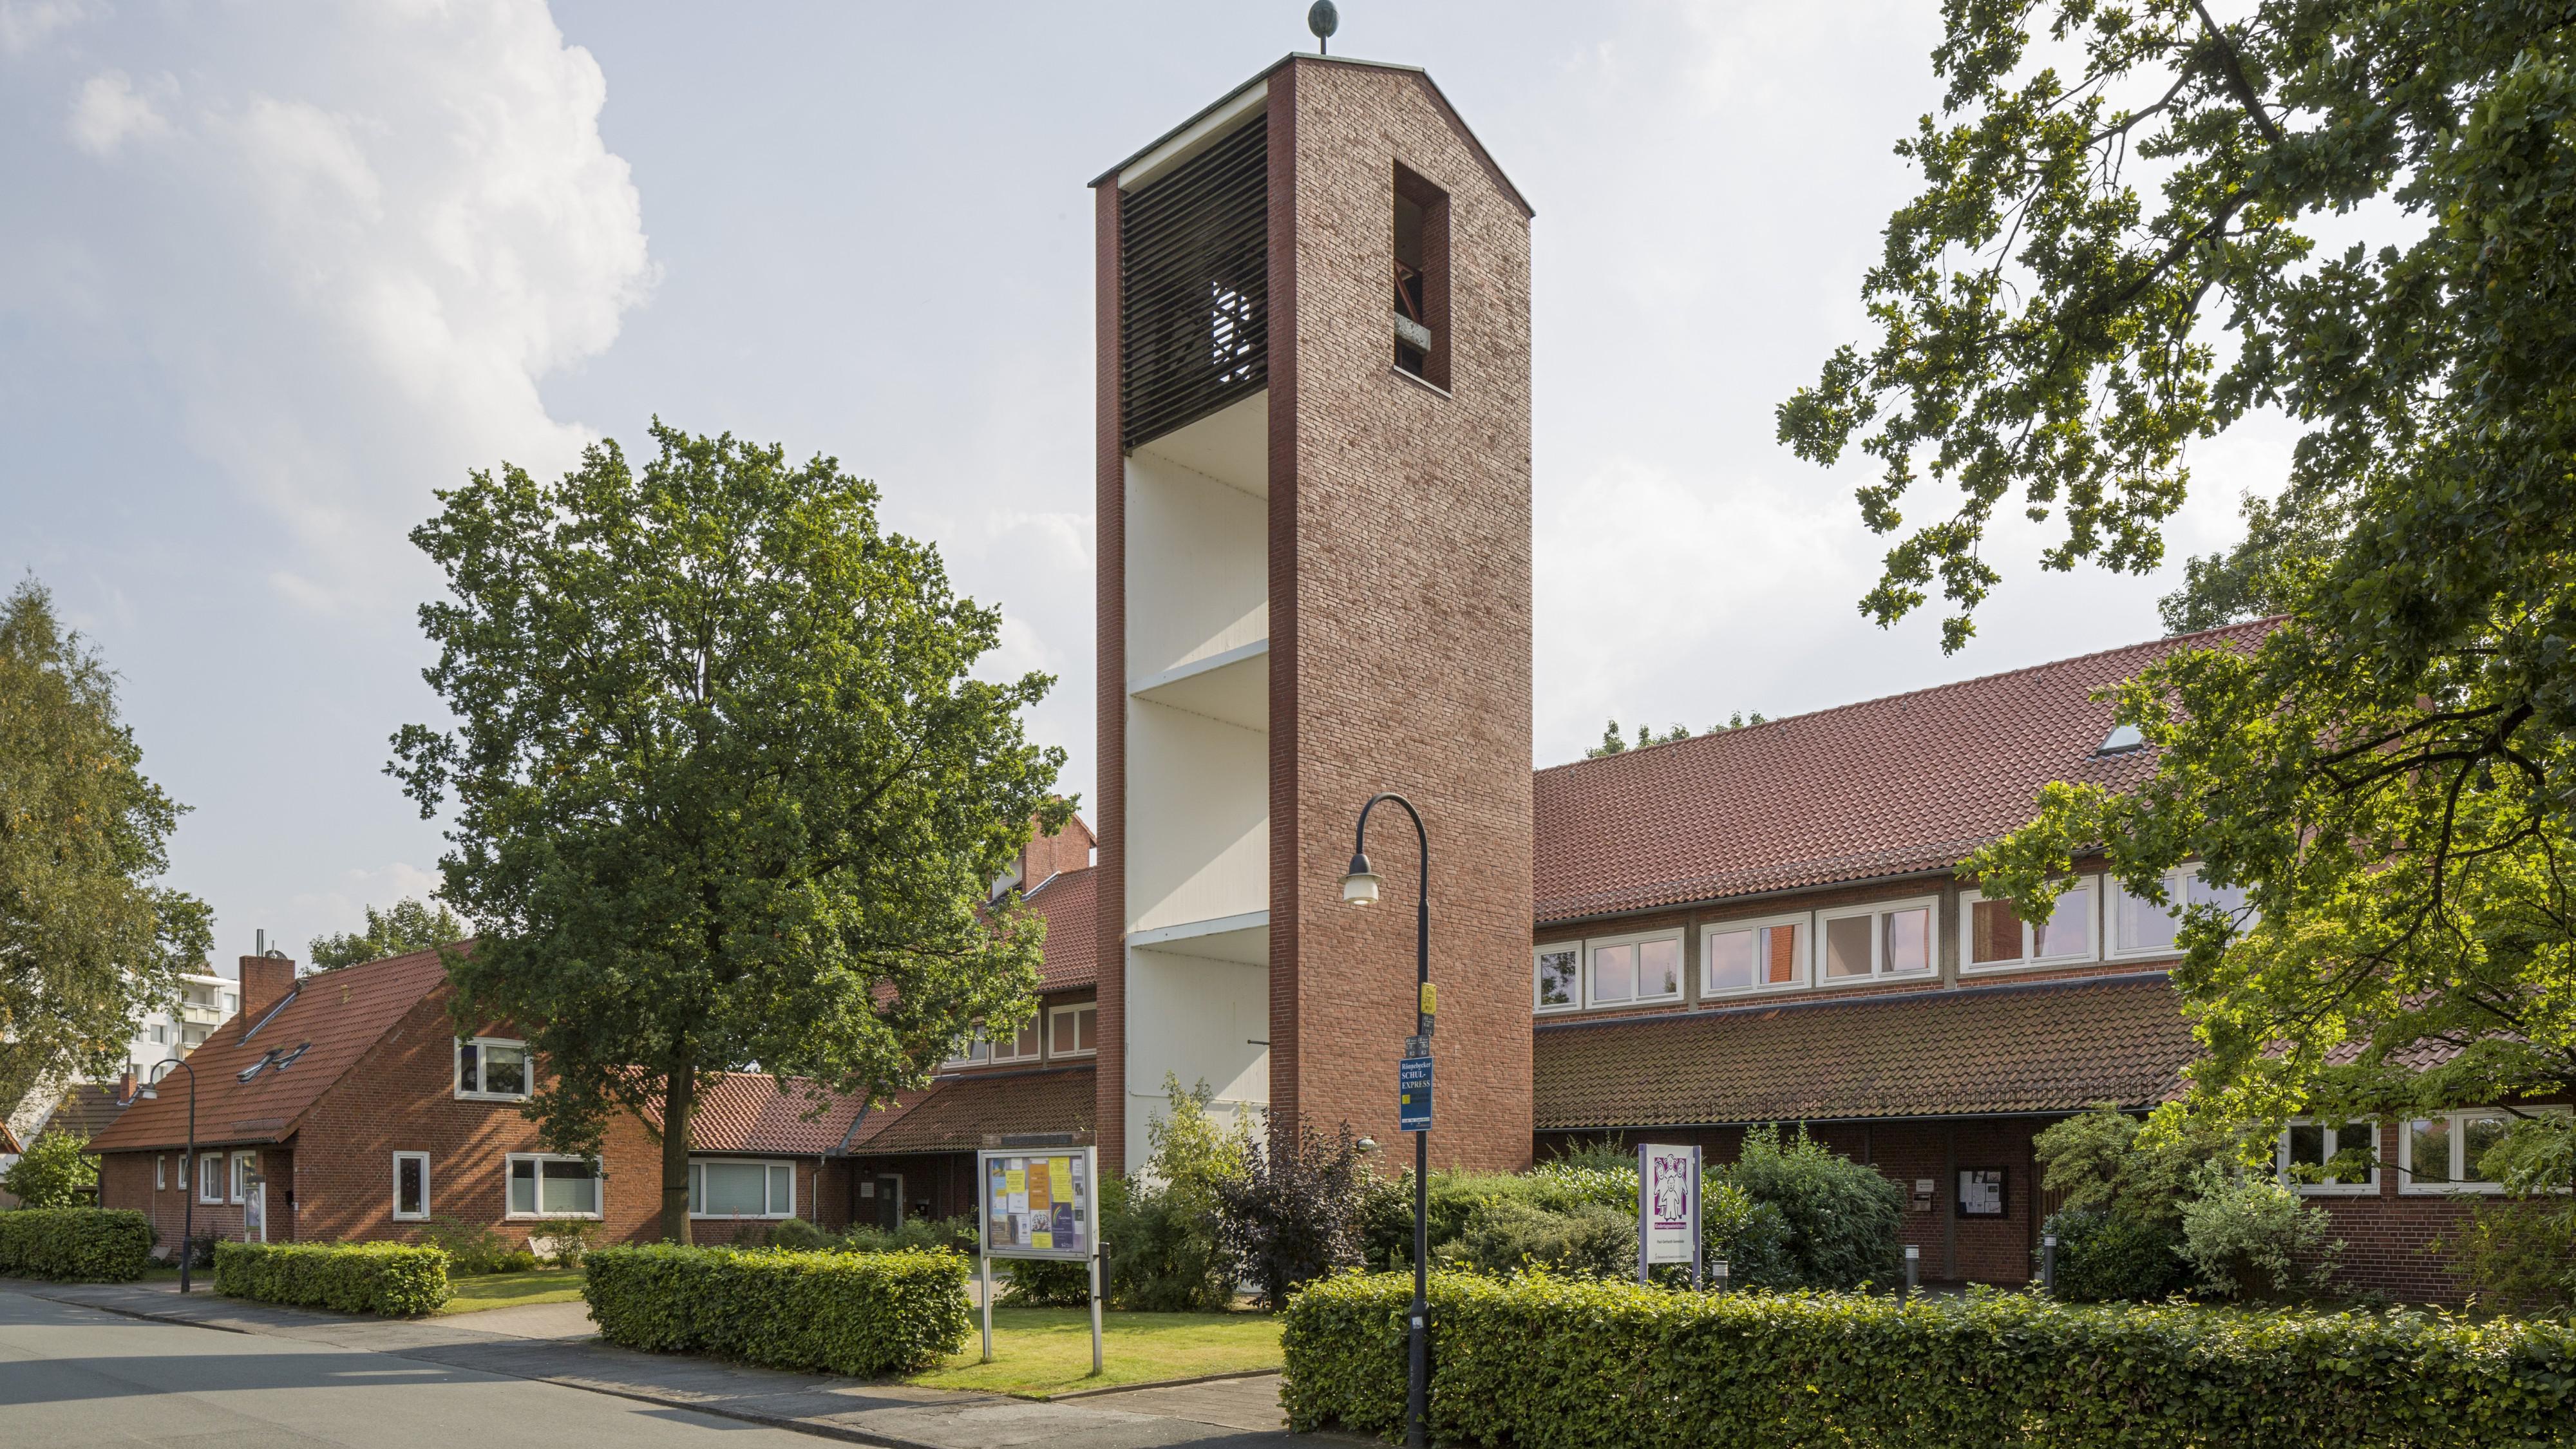 Bild der Kirche Rönnebeck-Farge - Paul-Gerhardt-Gemeinde Rönnebeck-Farge